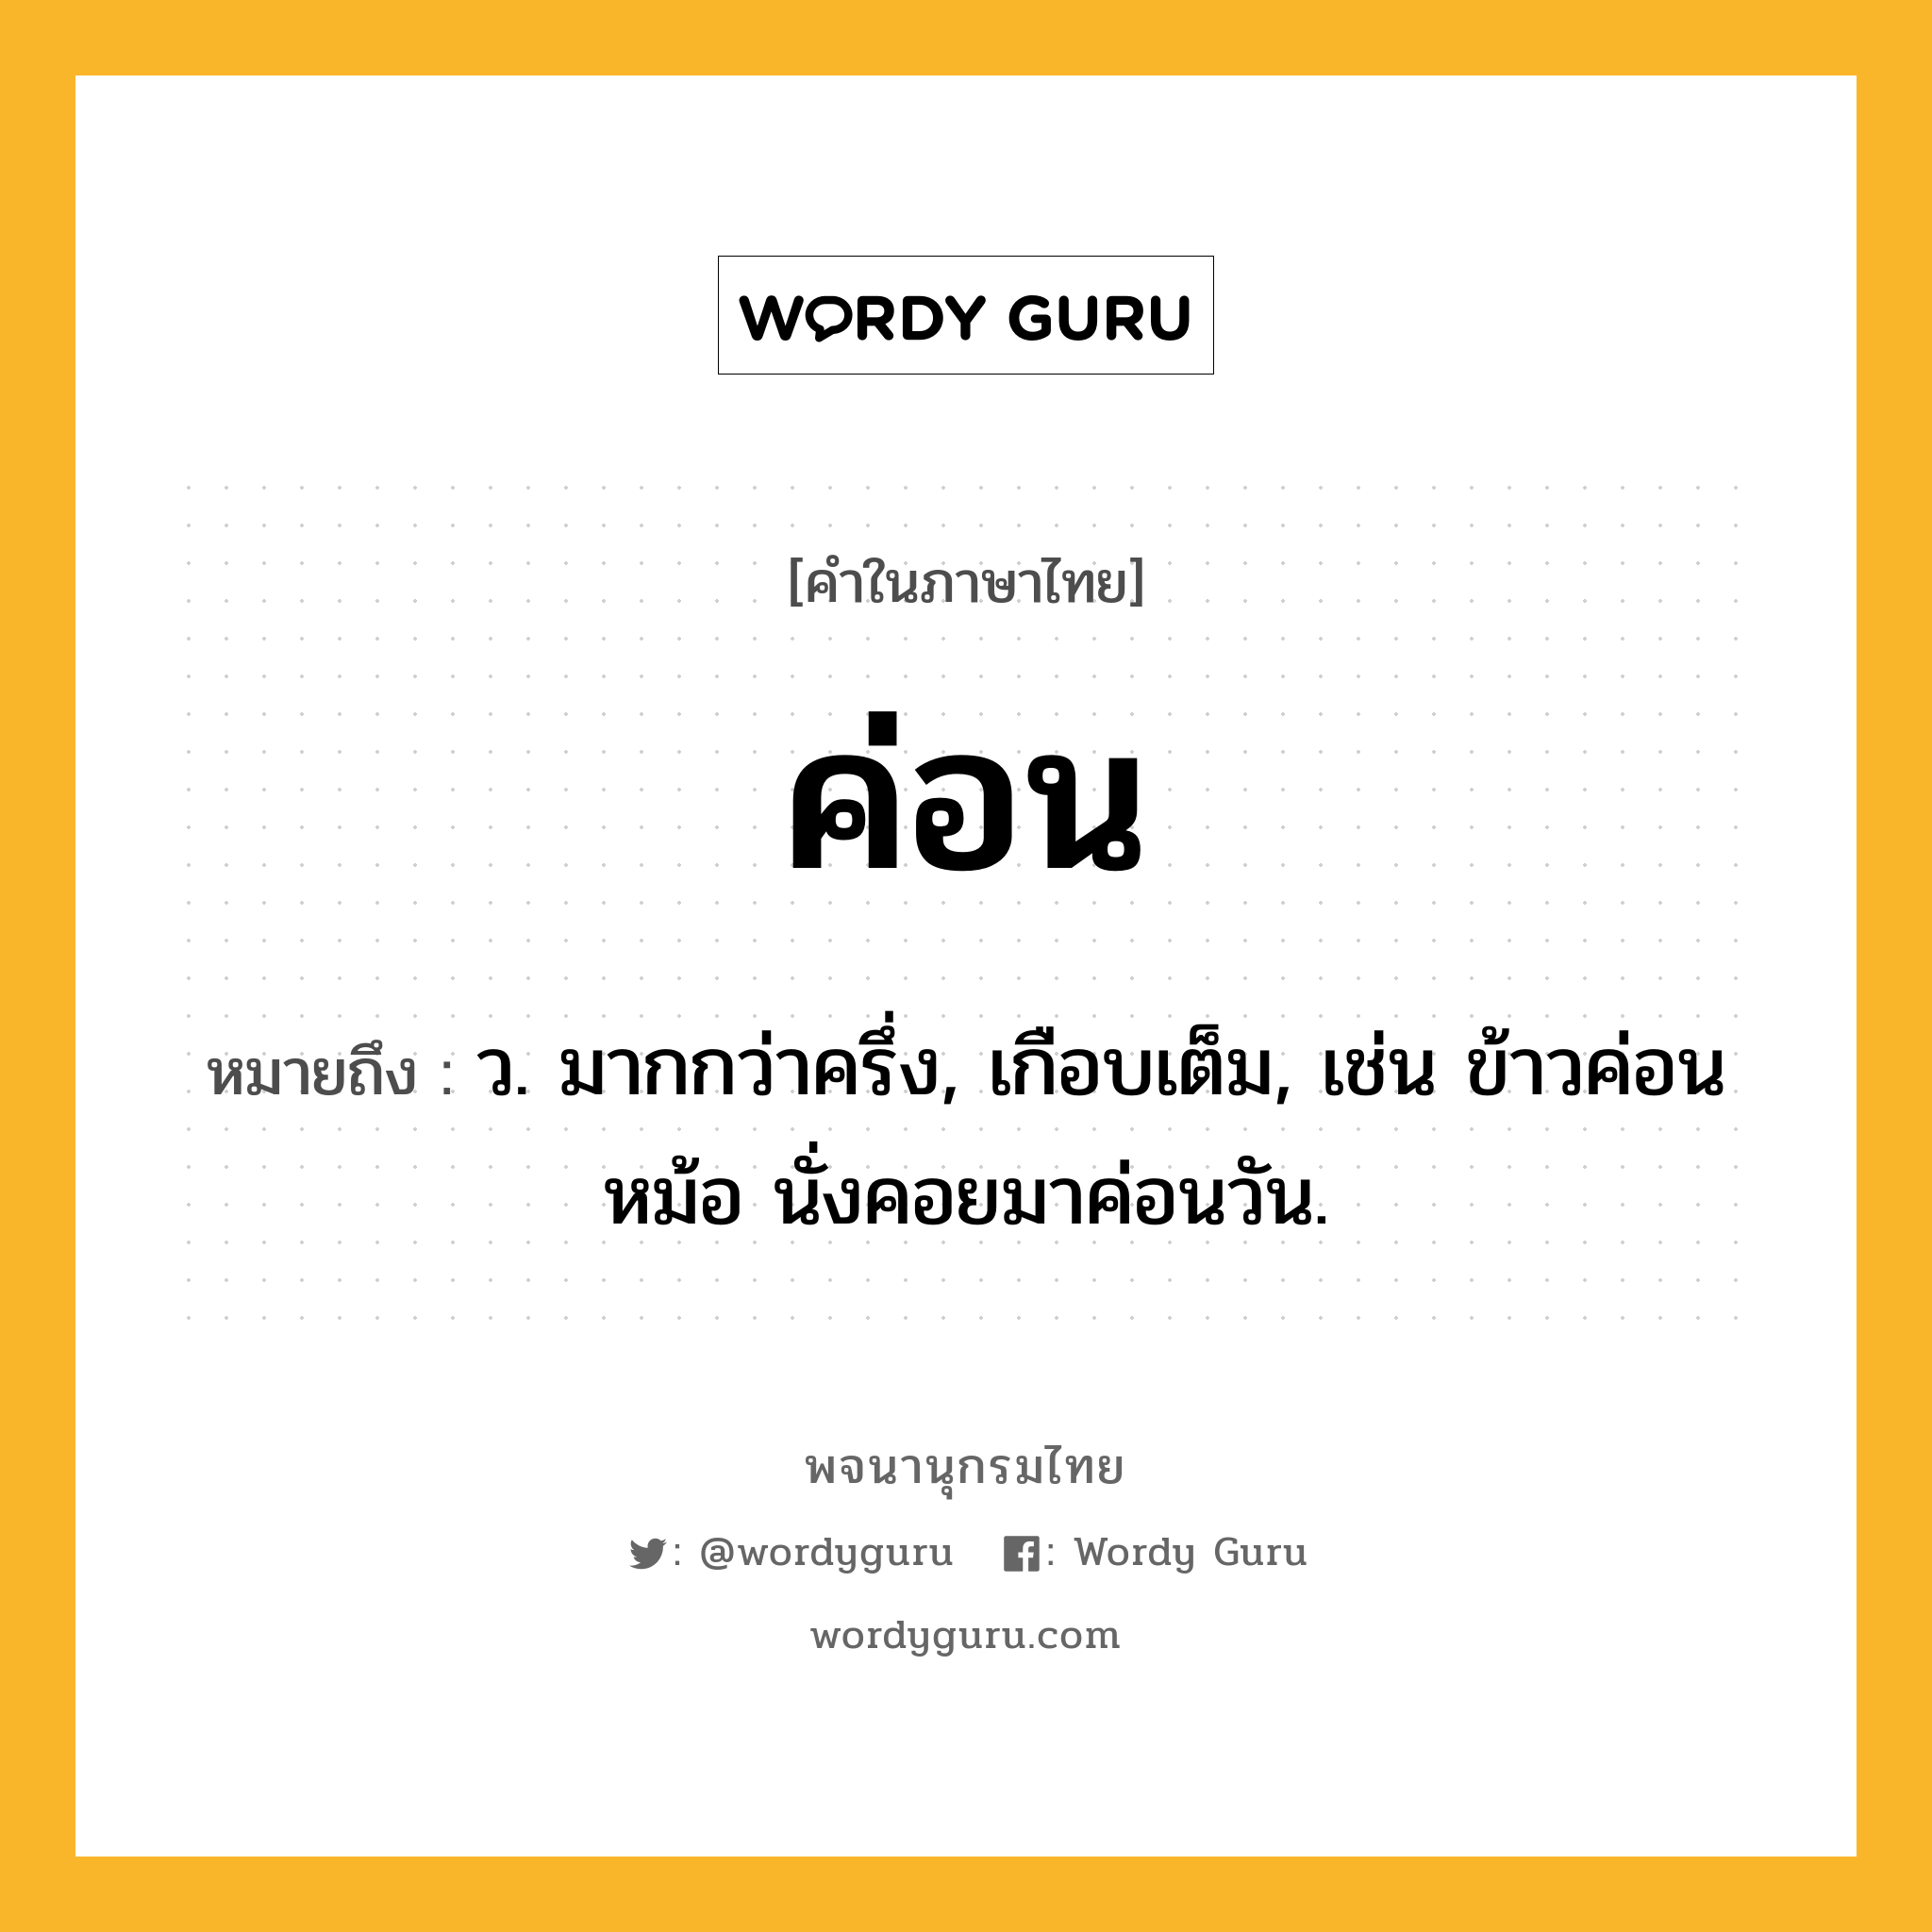 ค่อน หมายถึงอะไร?, คำในภาษาไทย ค่อน หมายถึง ว. มากกว่าครึ่ง, เกือบเต็ม, เช่น ข้าวค่อนหม้อ นั่งคอยมาค่อนวัน.